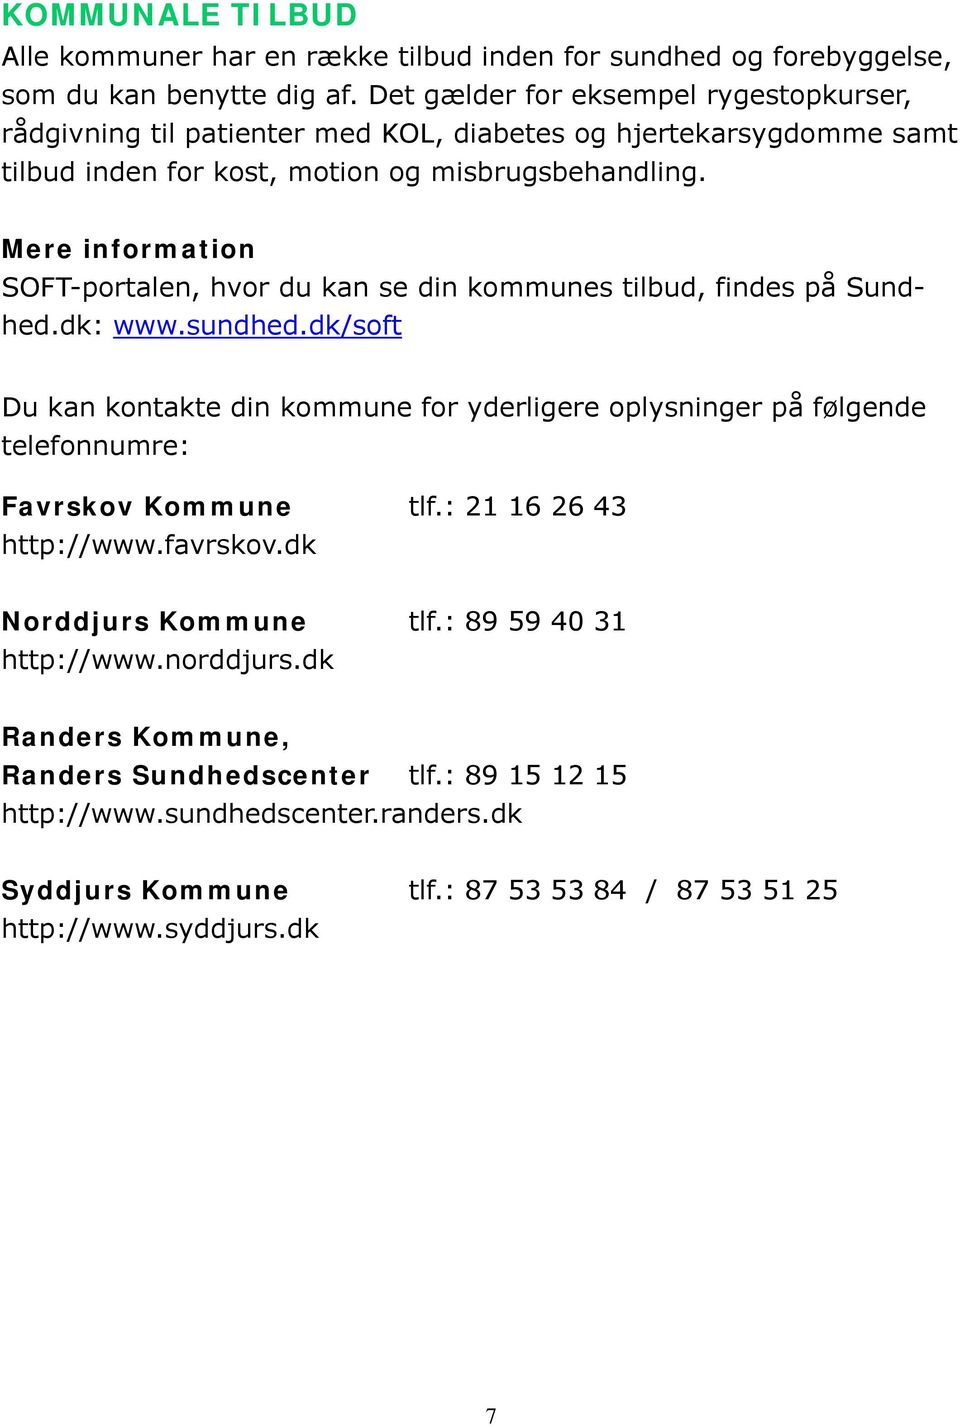 SOFT-portalen, hvor du kan se din kommunes tilbud, findes på Sundhed.dk: www.sundhed.